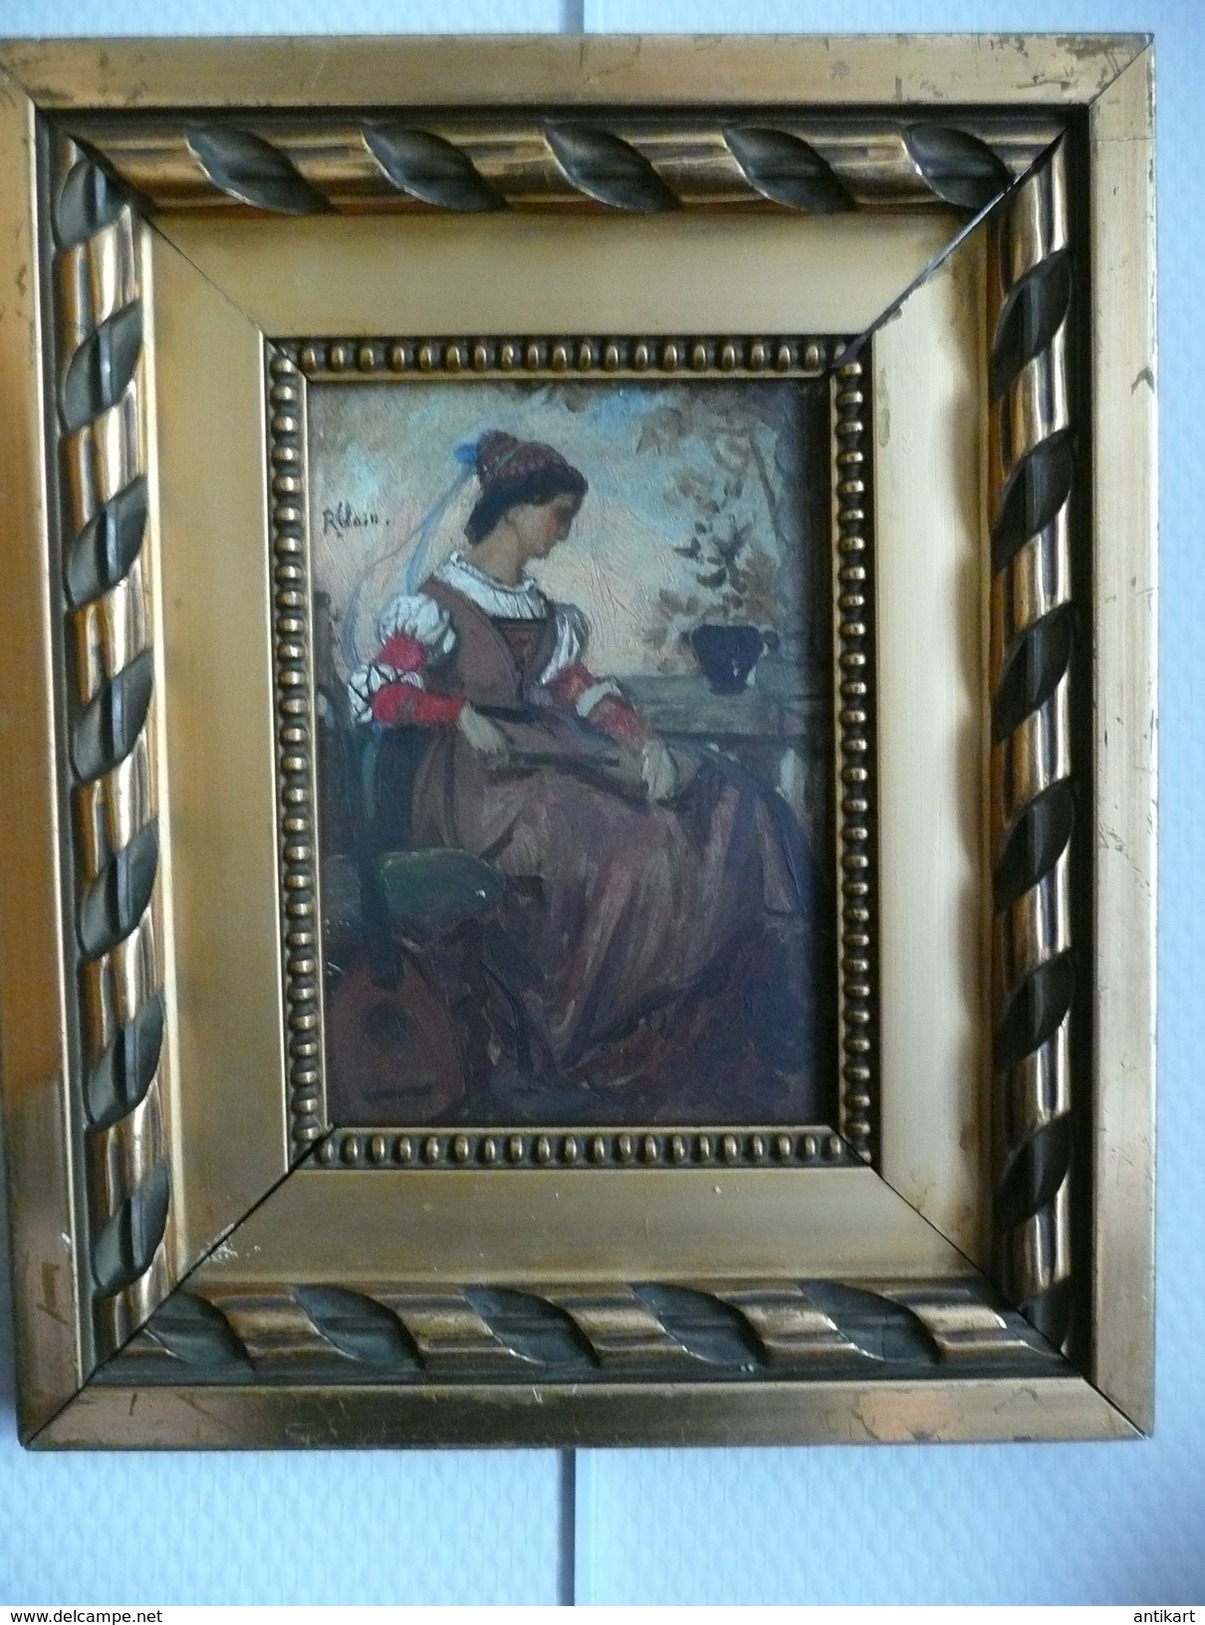 R. Clair, 1877 - Portrait de musicienne néorenaissance huile sur panneau